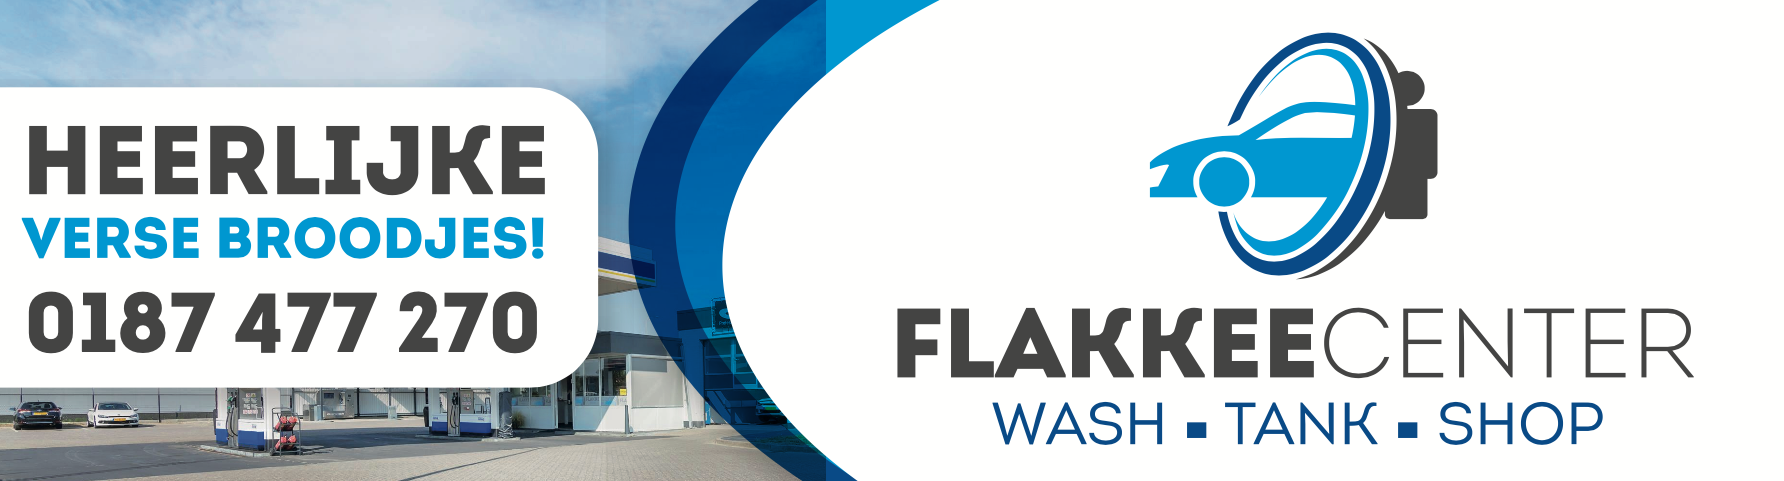 Flakkeecenter logo